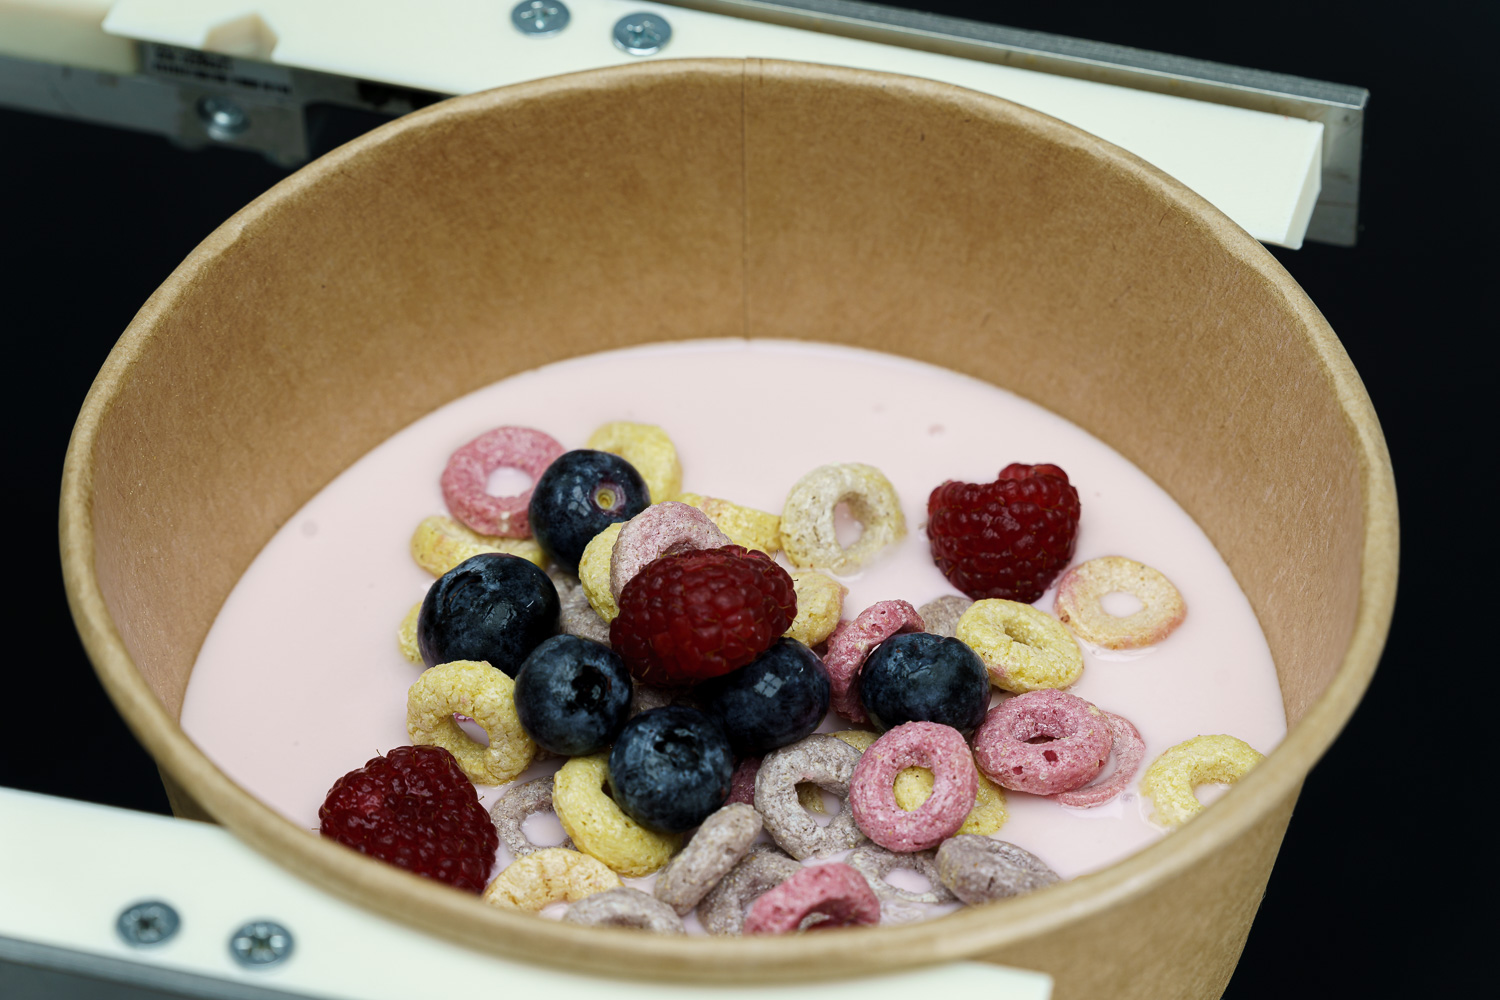 Breakfast Froot Loops with berries and yogurt